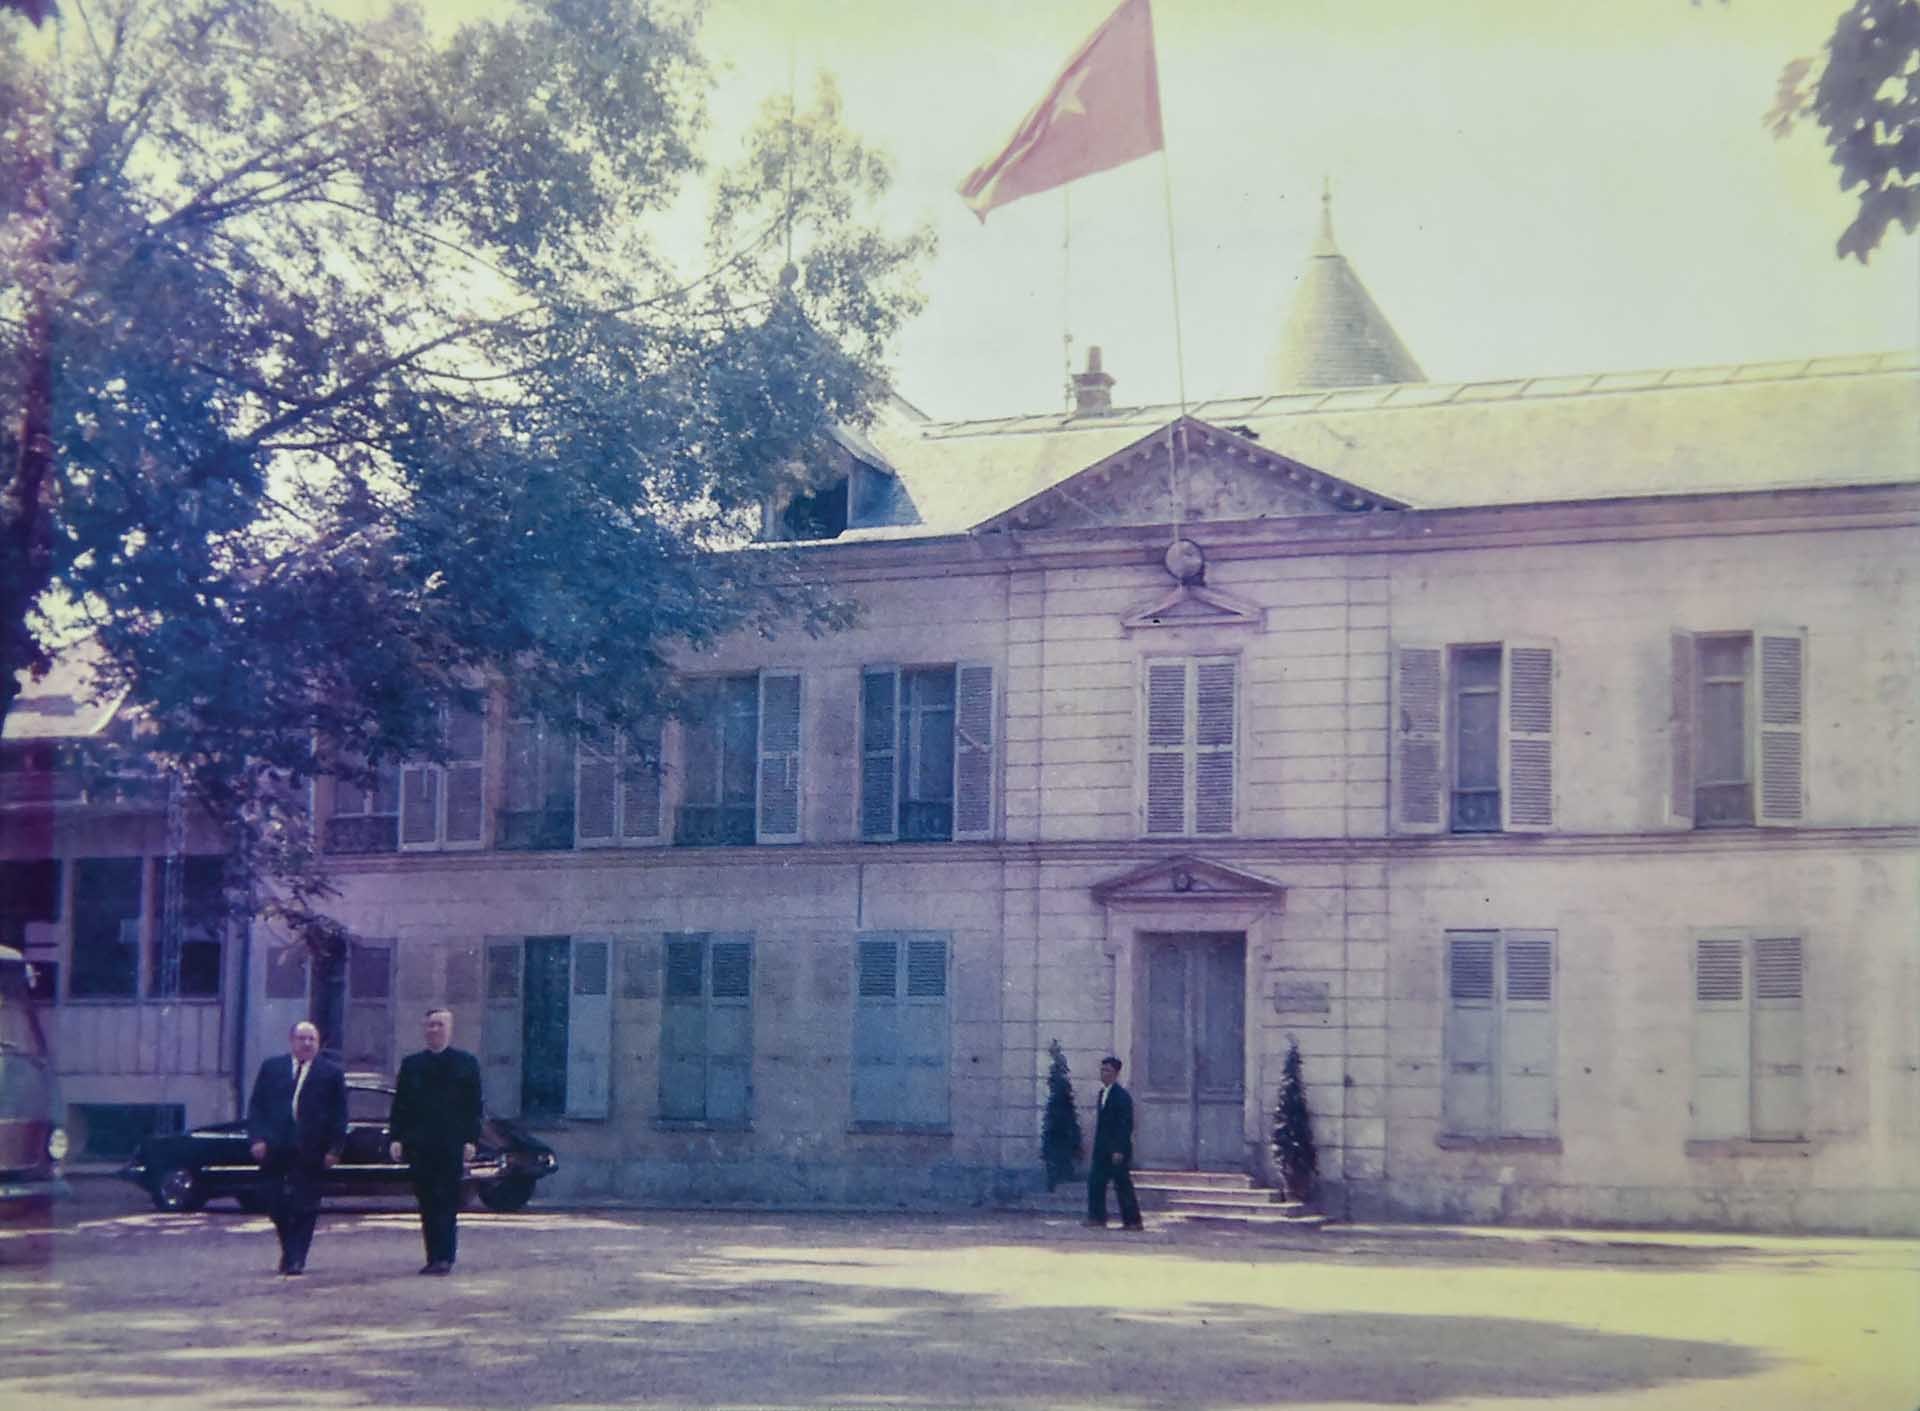 Trụ sở phái đoàn Việt Nam Dân chủ Cộng hòa ở khi dự Hội nghị Paris ở thành phố Choisy-le-Roi.